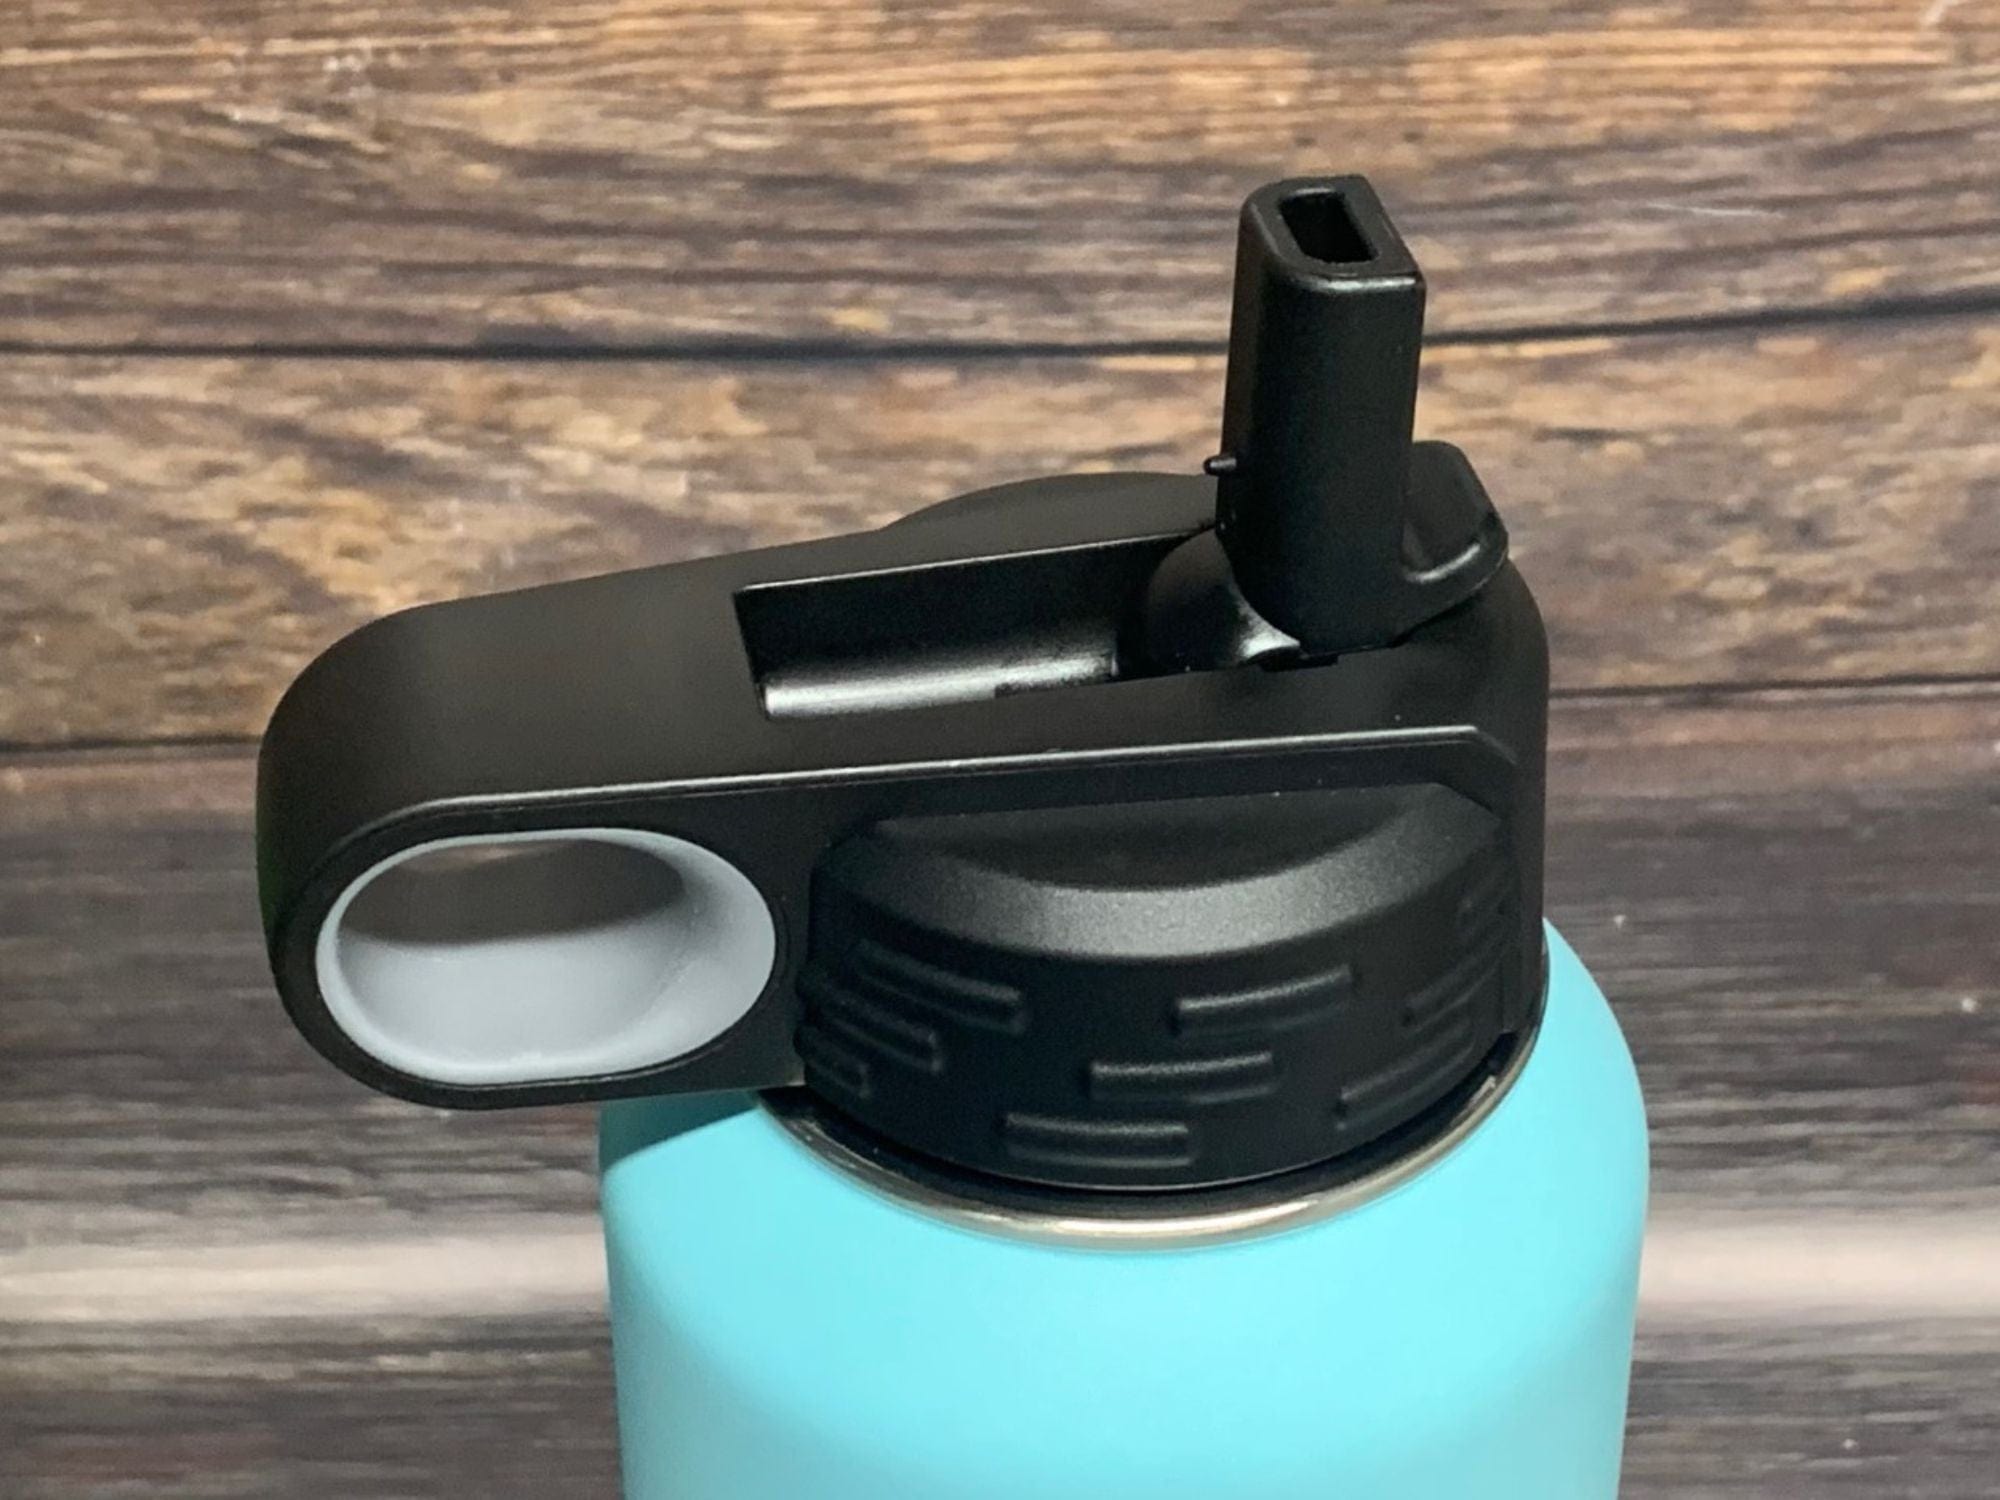 32oz water bottle lid